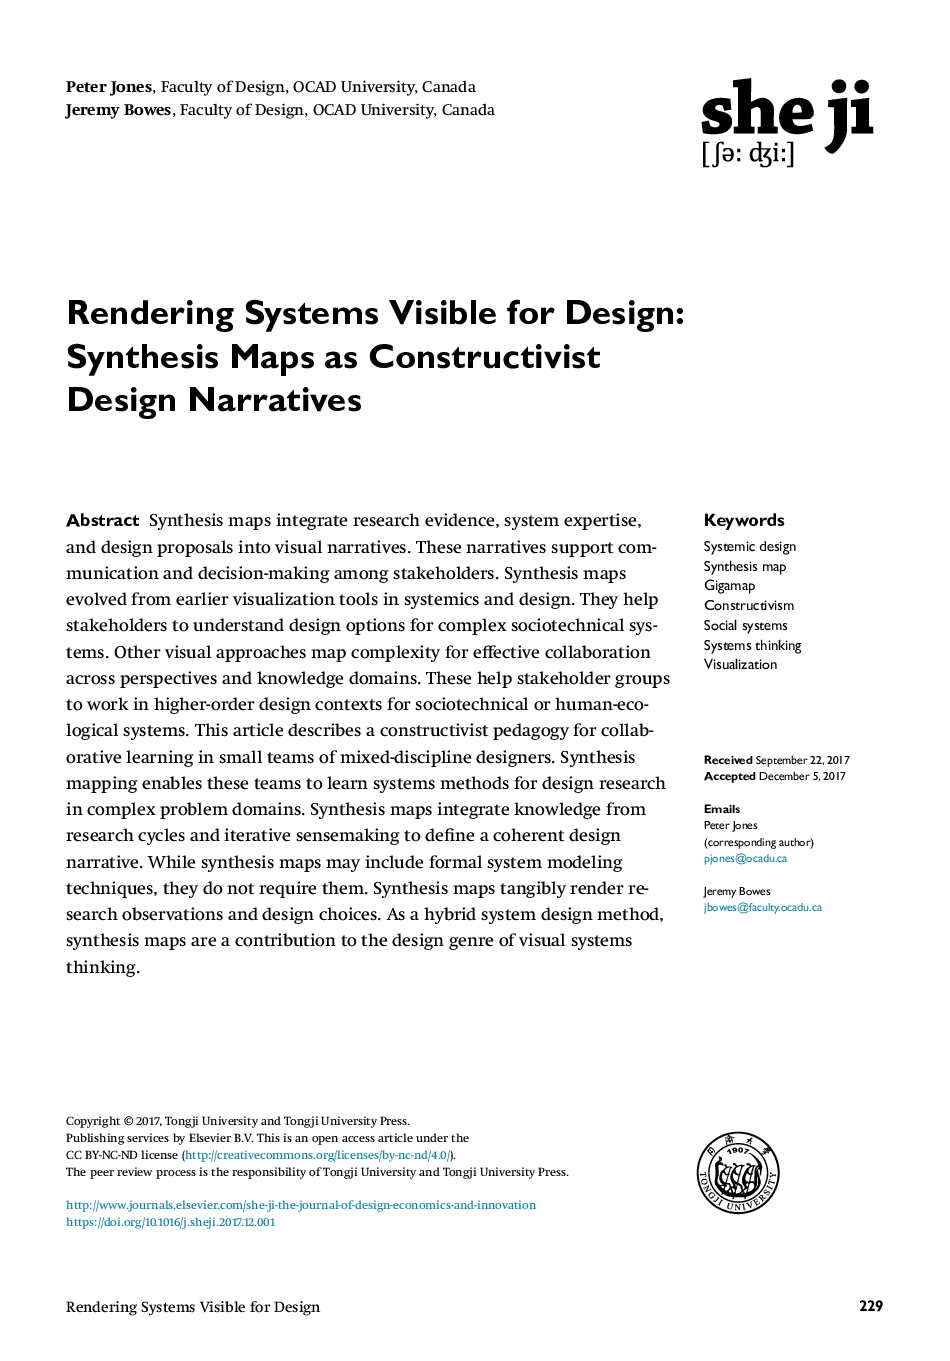 سیستم های رندر قابل مشاهده برای طراحی: نقشه های تلفیقی به عنوان روایت های ساختاری سازنده 